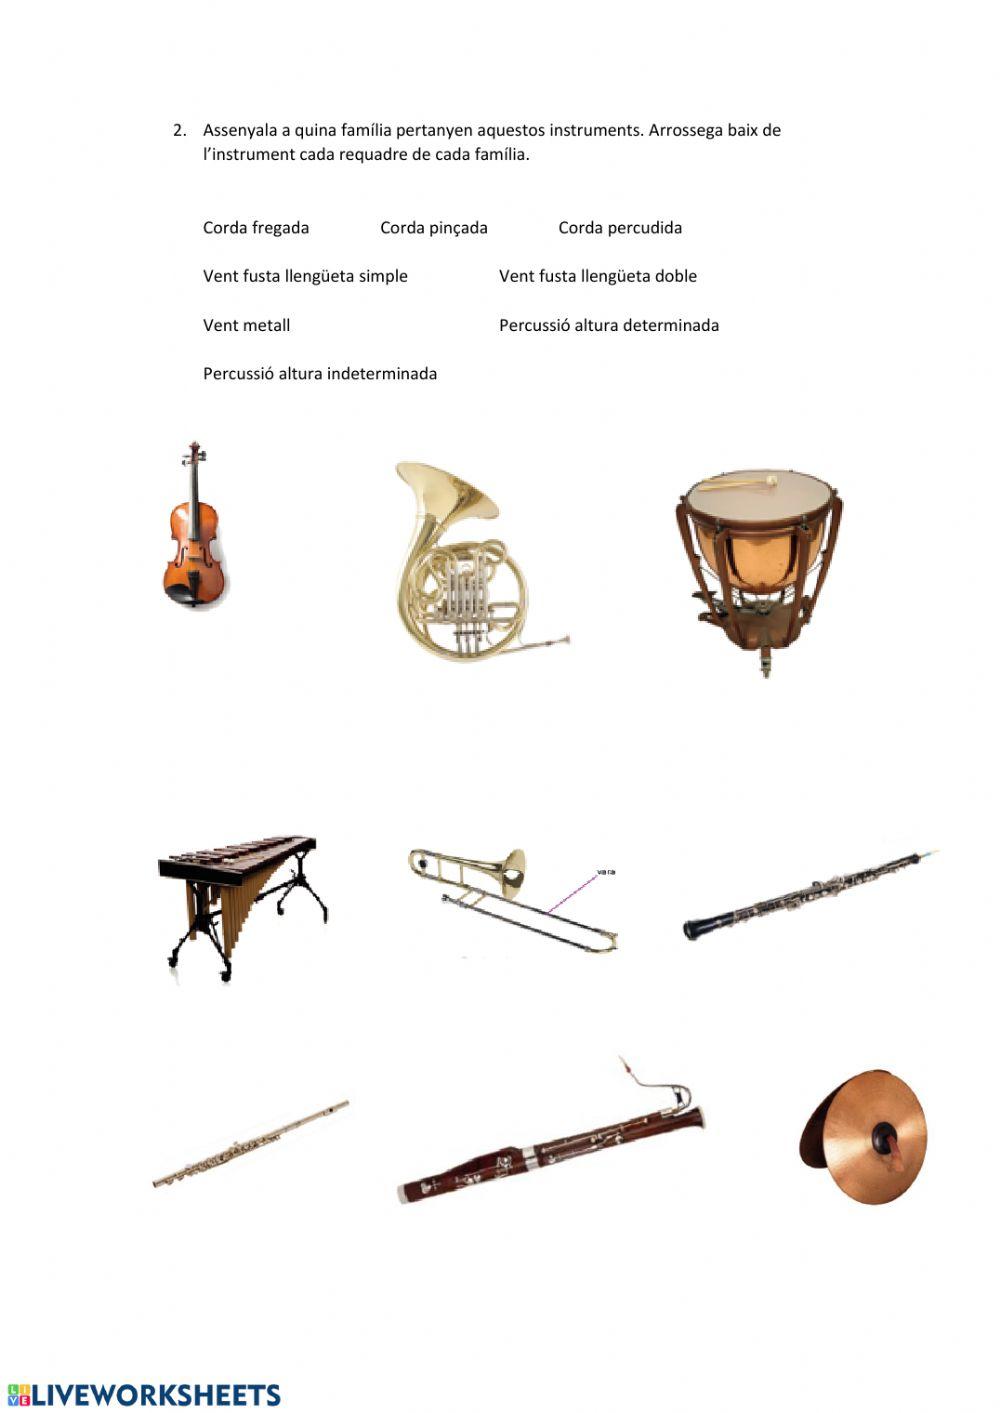 Instruments musicals